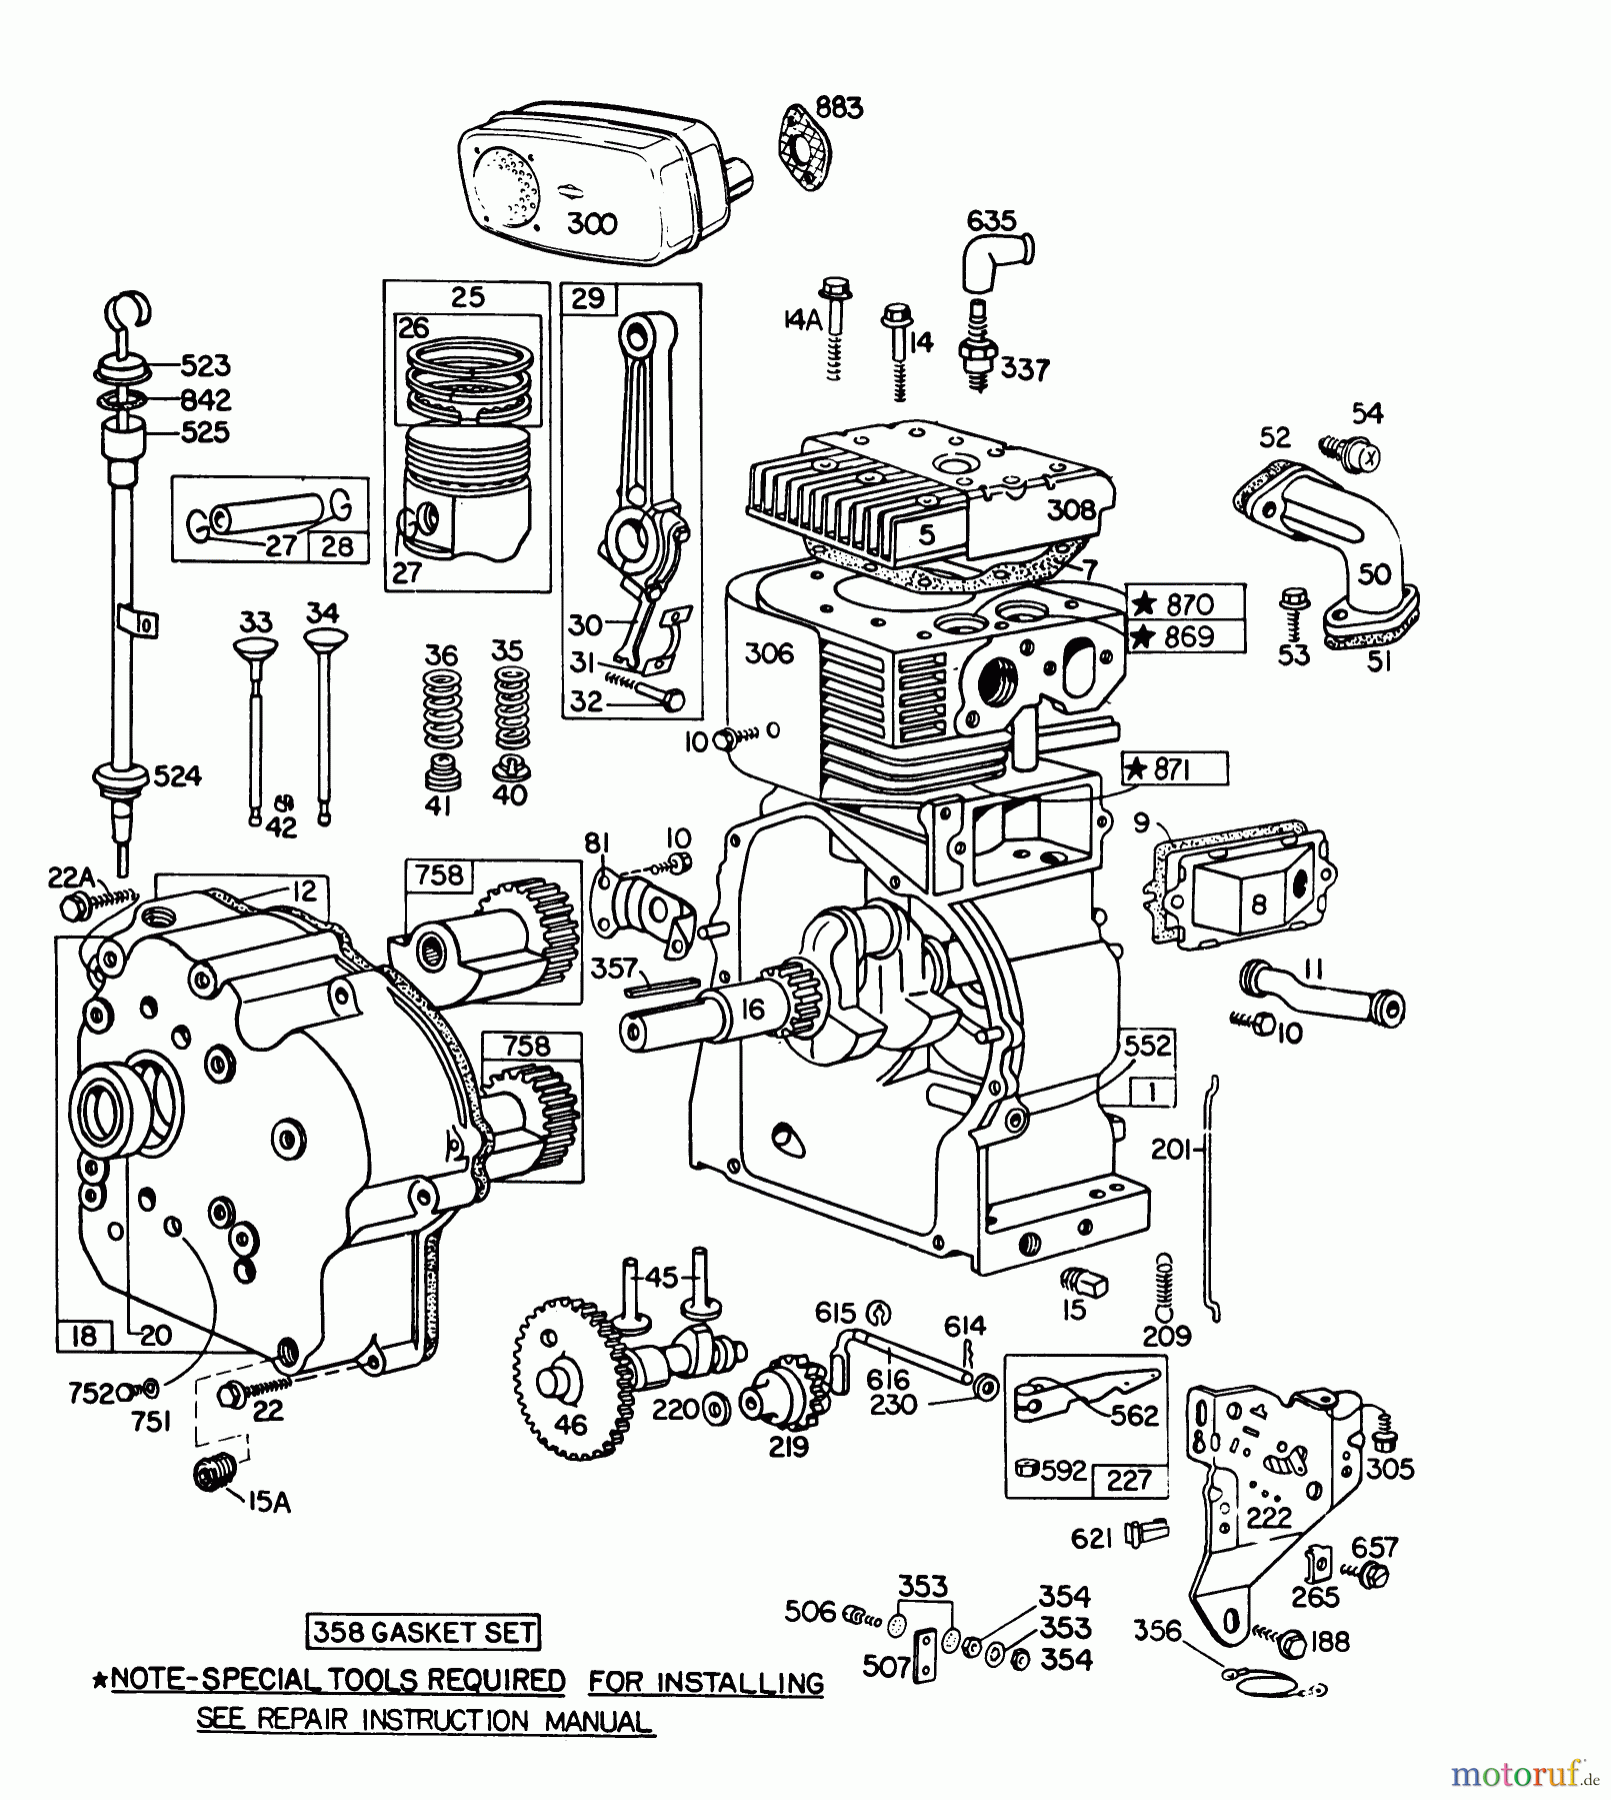  Toro Neu Snow Blowers/Snow Throwers Seite 1 38095 (1132) - Toro 1132 Snowthrower, 1983 (3000001-3999999) ENGINE BRIGGS & STRATTON MODEL NO. 252416-0190-01 #1